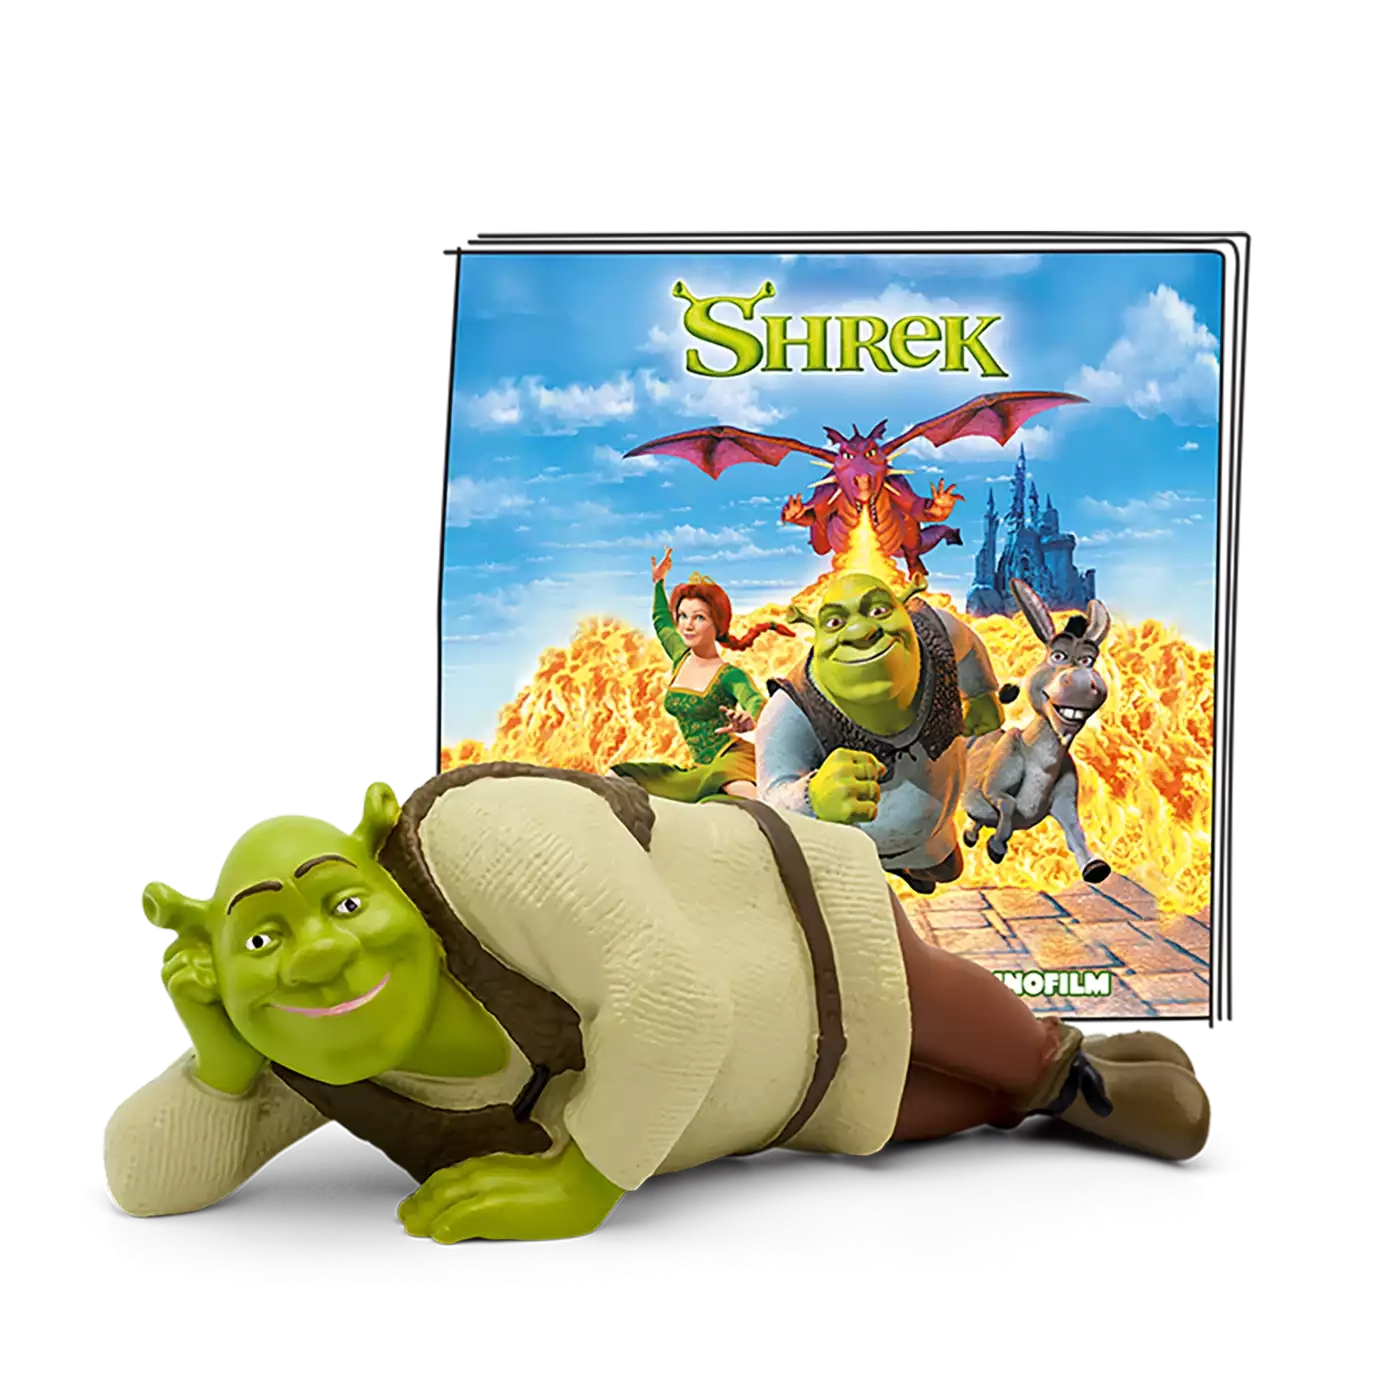 Shrek - Der tollkühne Held tonies 2000580565508 1